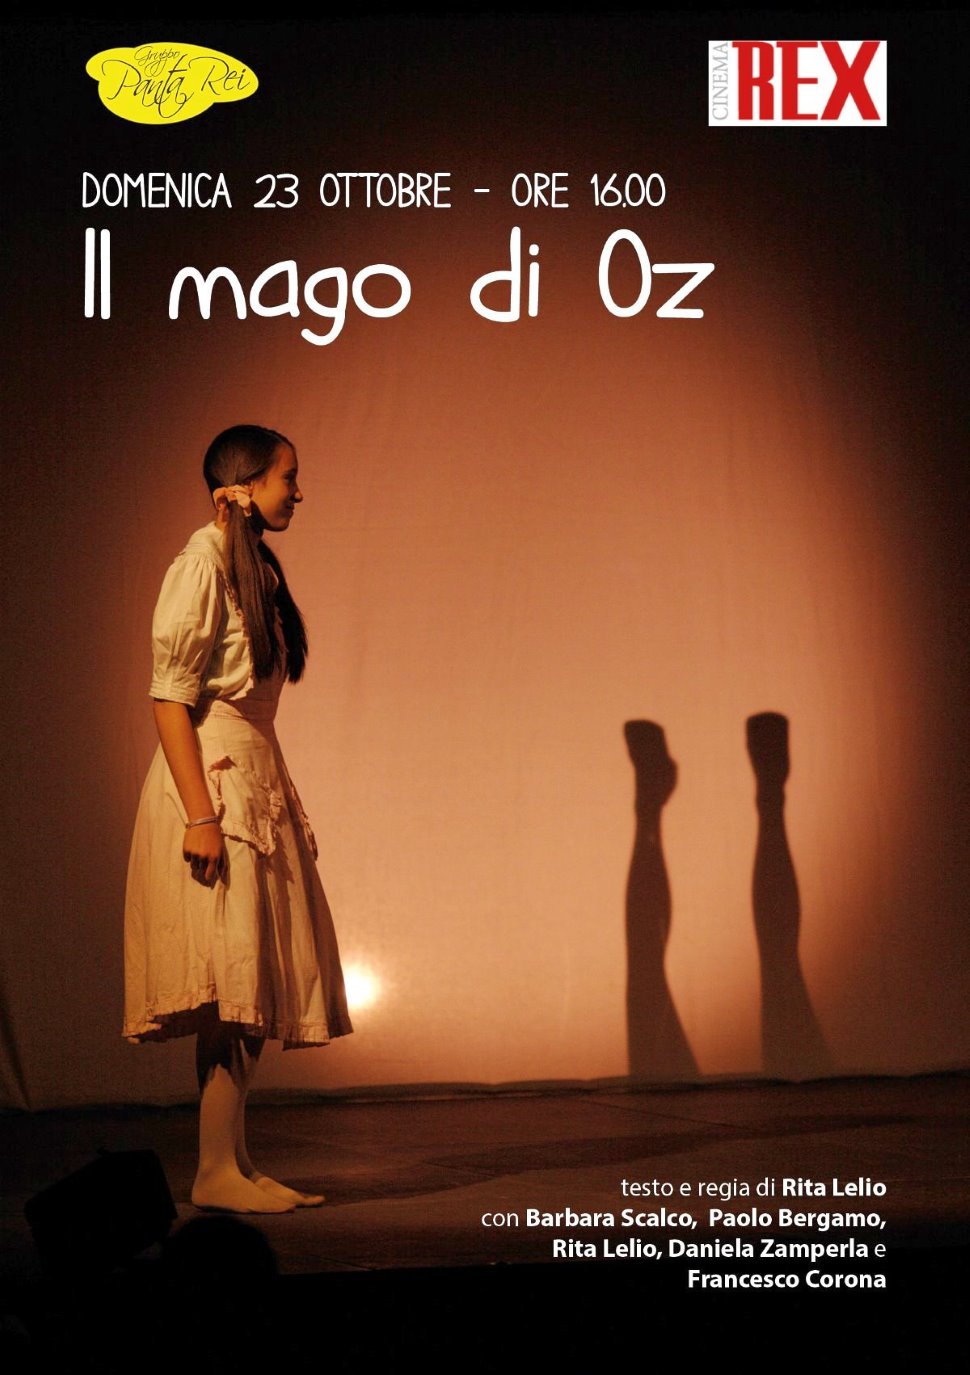 Domenica 23 ottobre, IL MAGO DI OZ al Cinema Teatro Rex di Padova